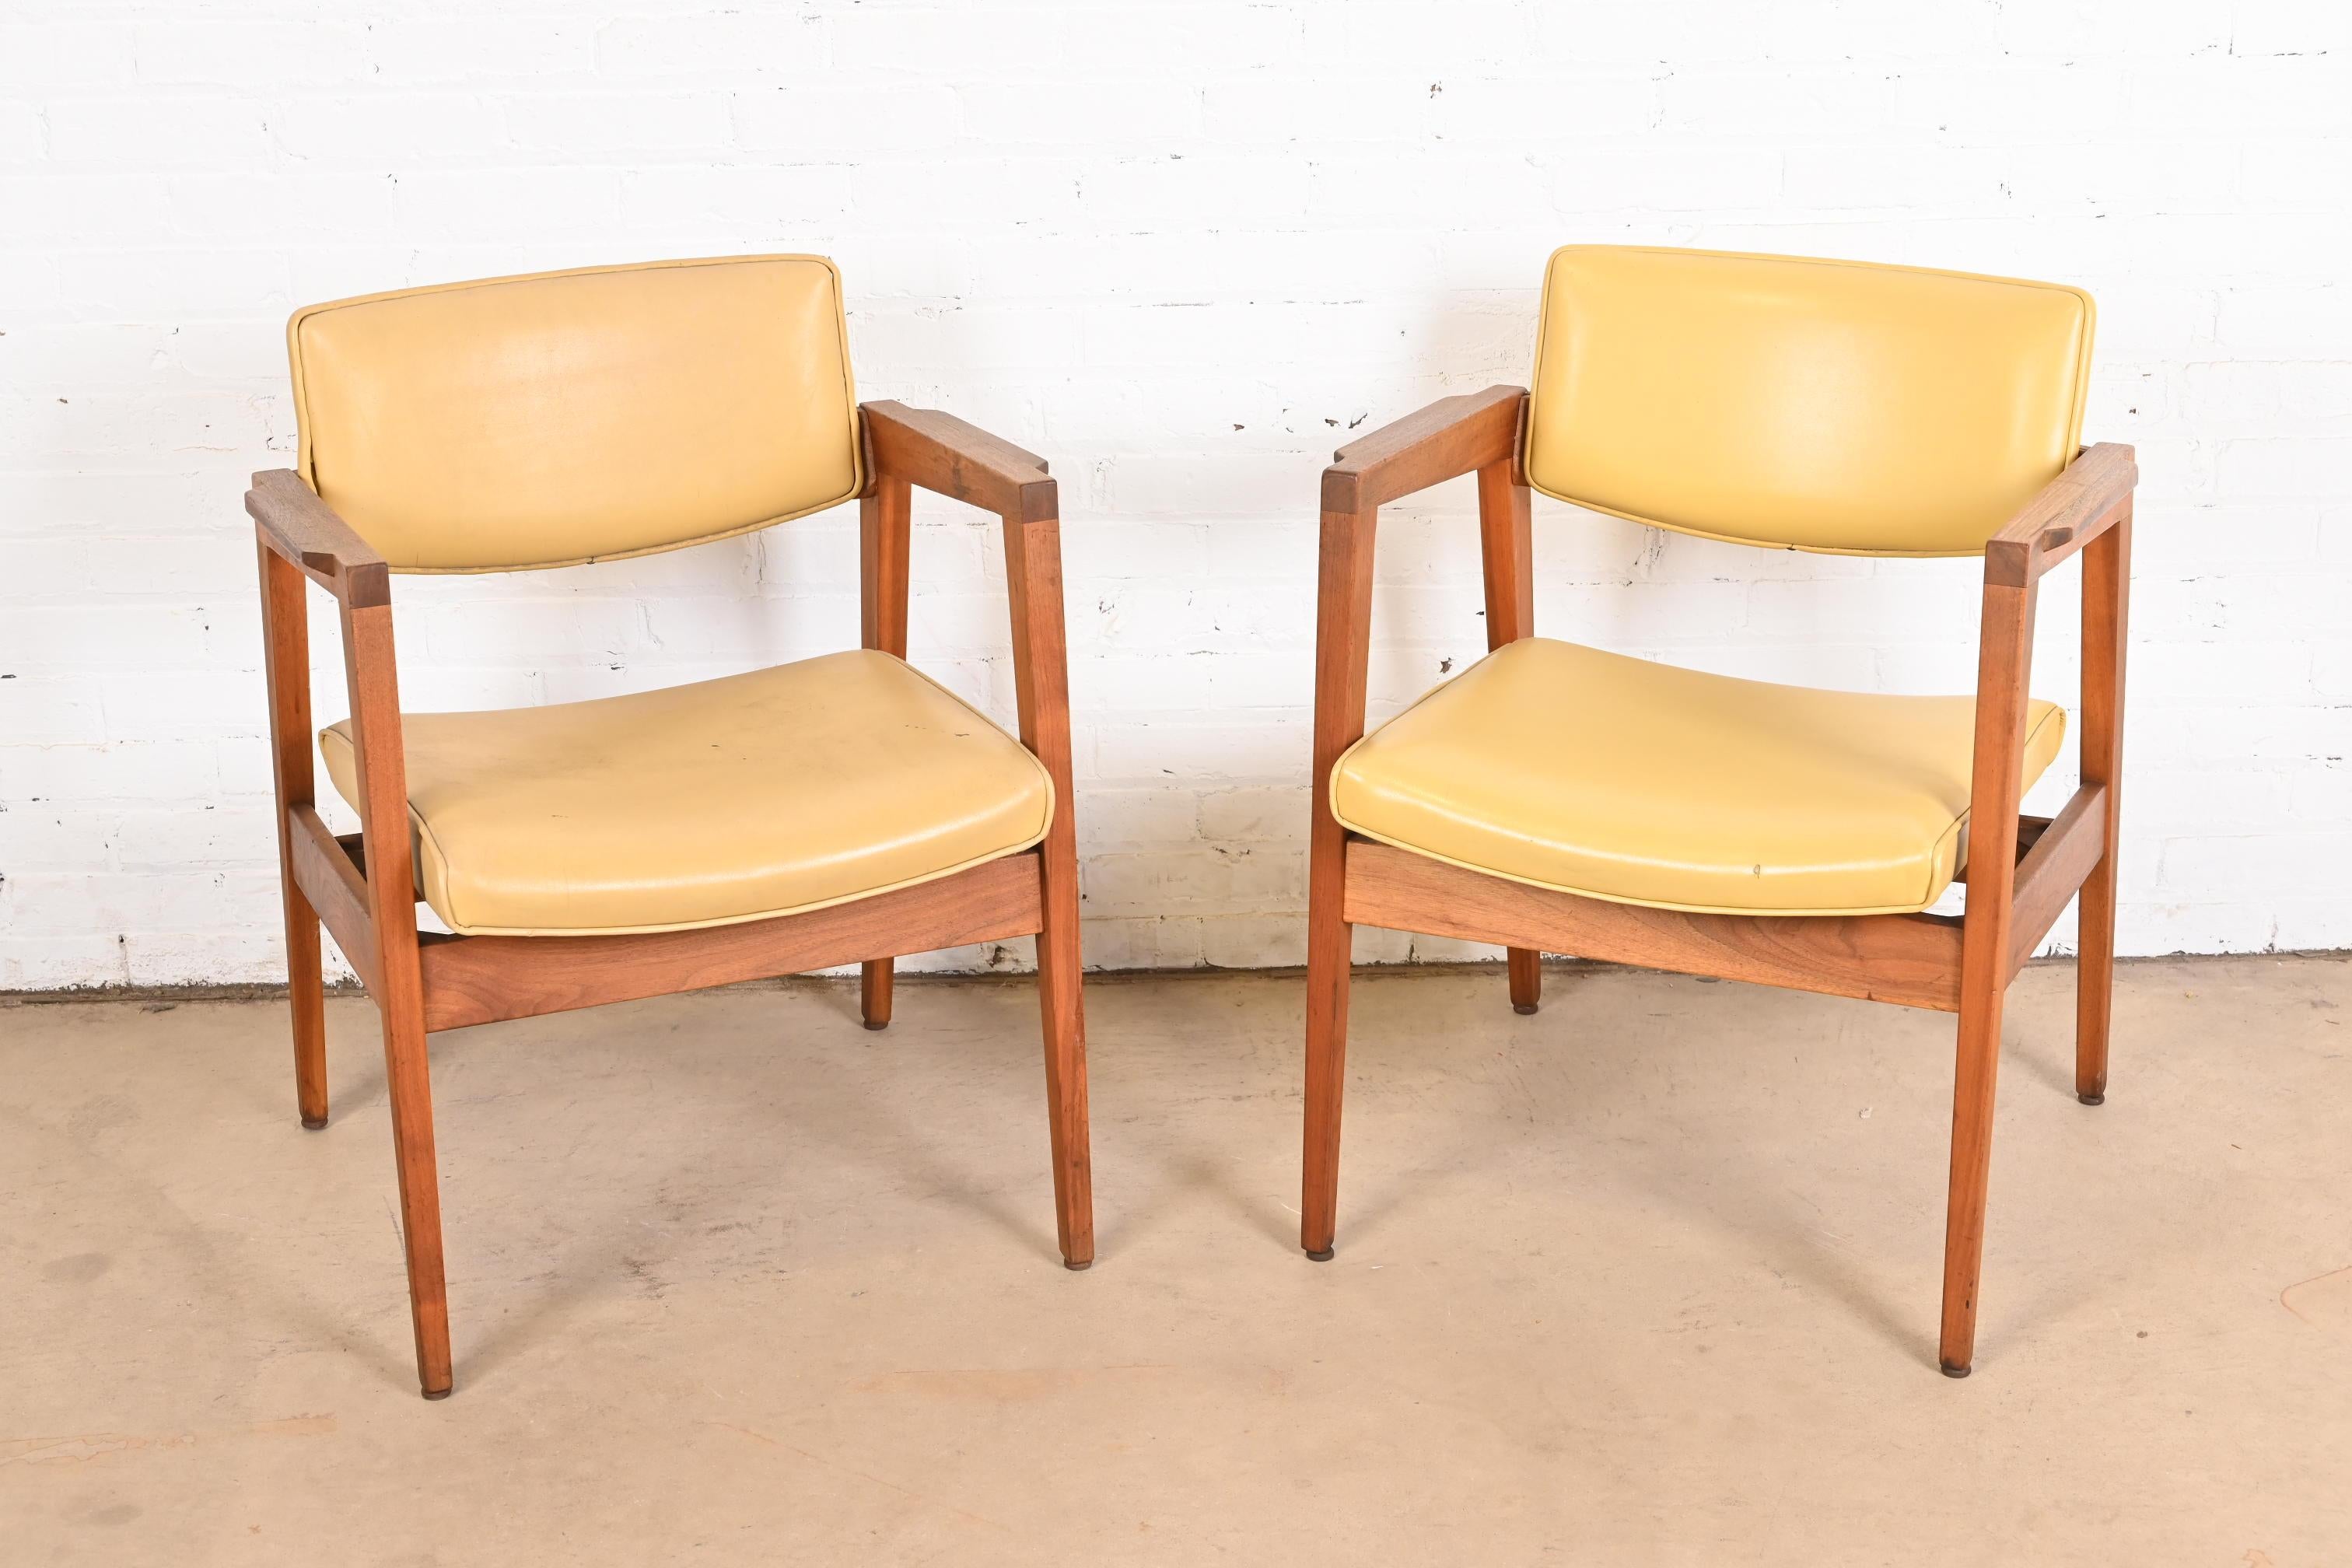 Une paire de fauteuils club ou de chaises de salon élégants et stylés de style moderne du milieu du siècle.

À la manière de Jens Risom

Par Gunlocke

États-Unis, années 1960

Châssis en noyer massif sculpté, avec revêtement en vinyle jaune